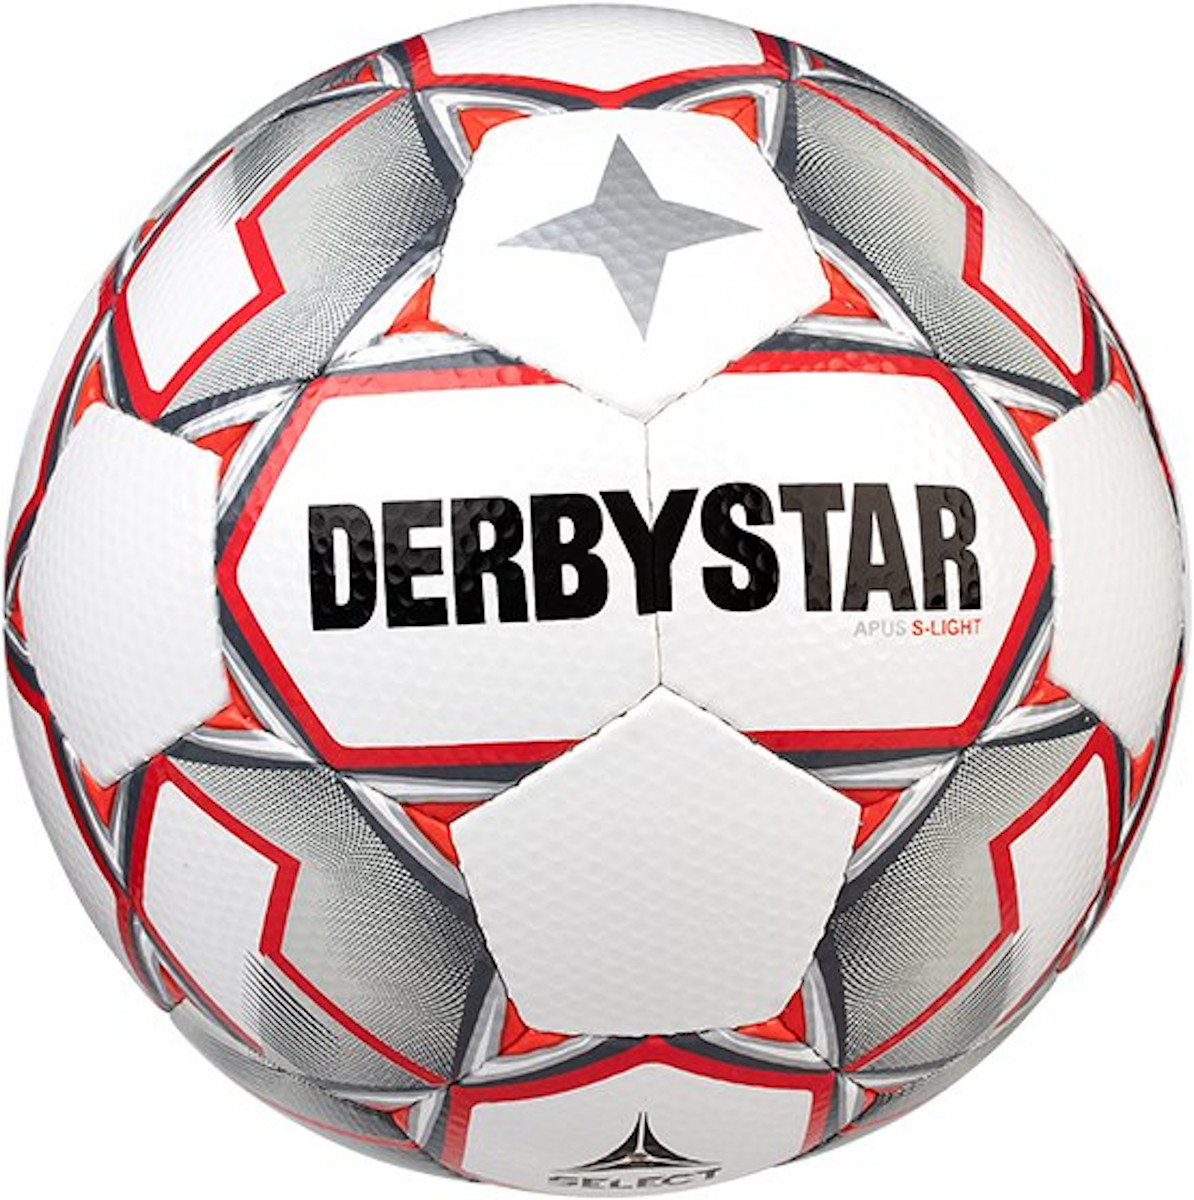 Piłka Derbystar Apus S-Light v20 290 grams Lightball